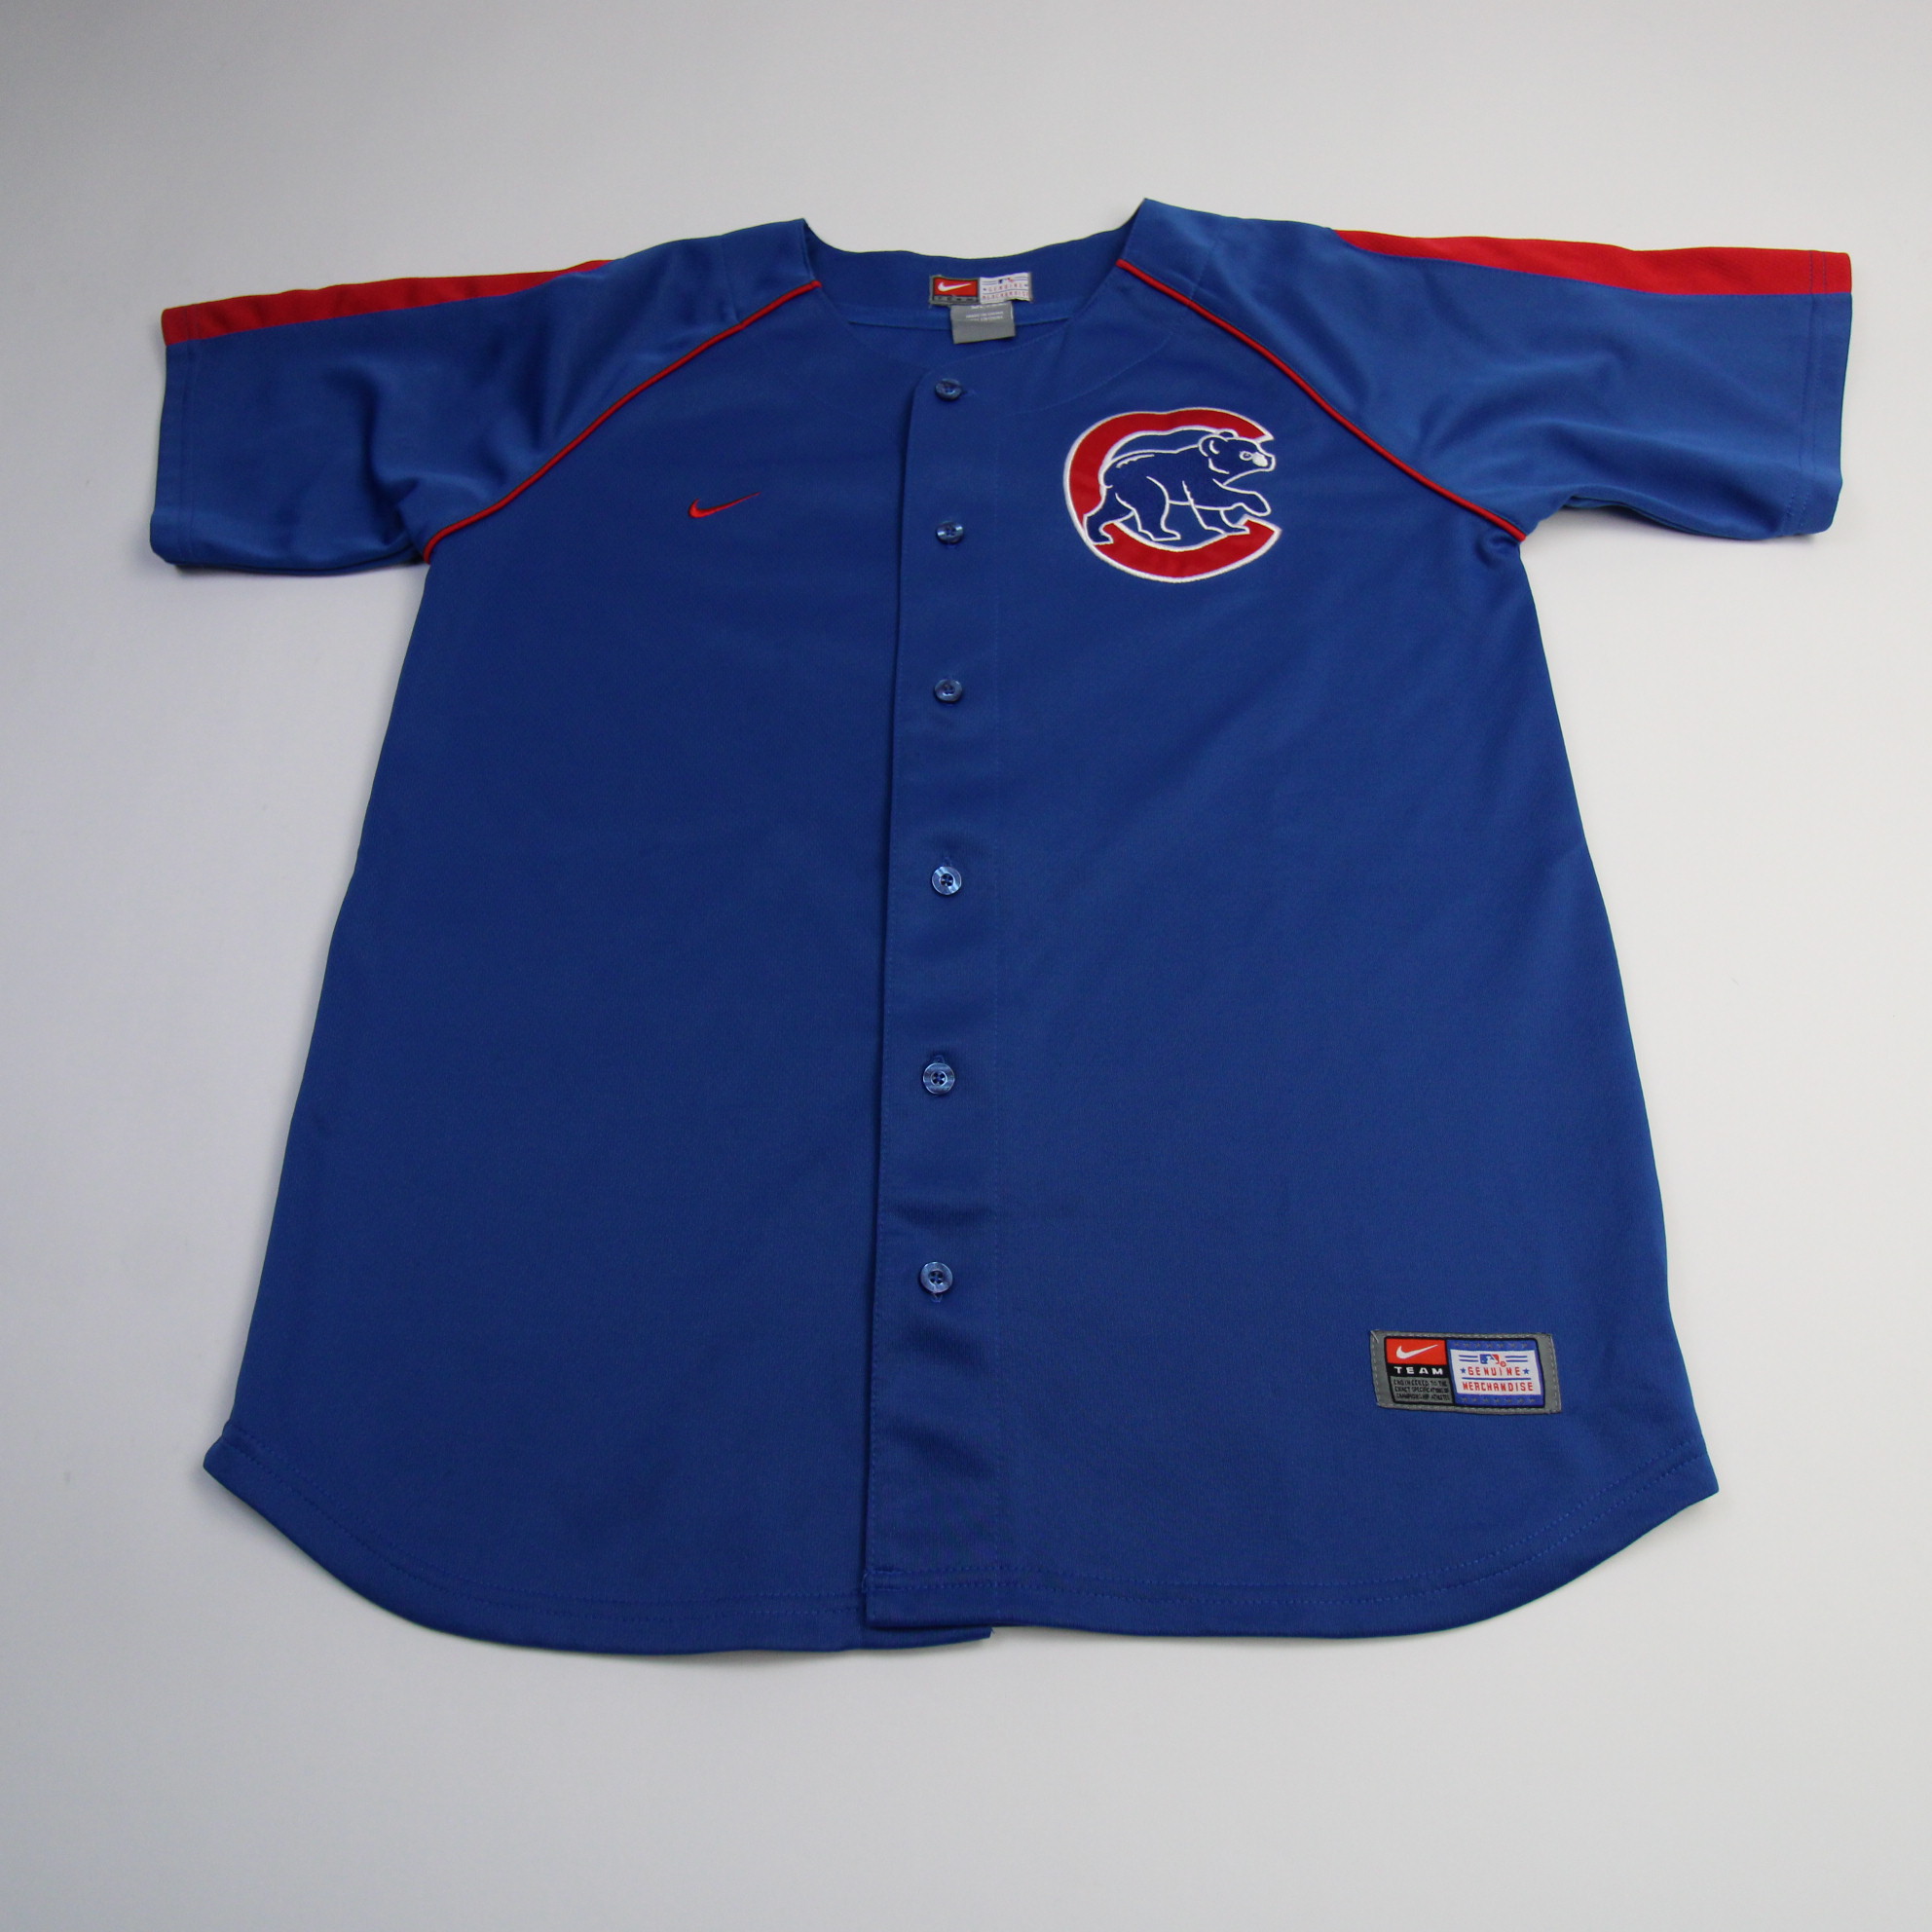 Chicago Cubs Baseball Jerseys - Team Store